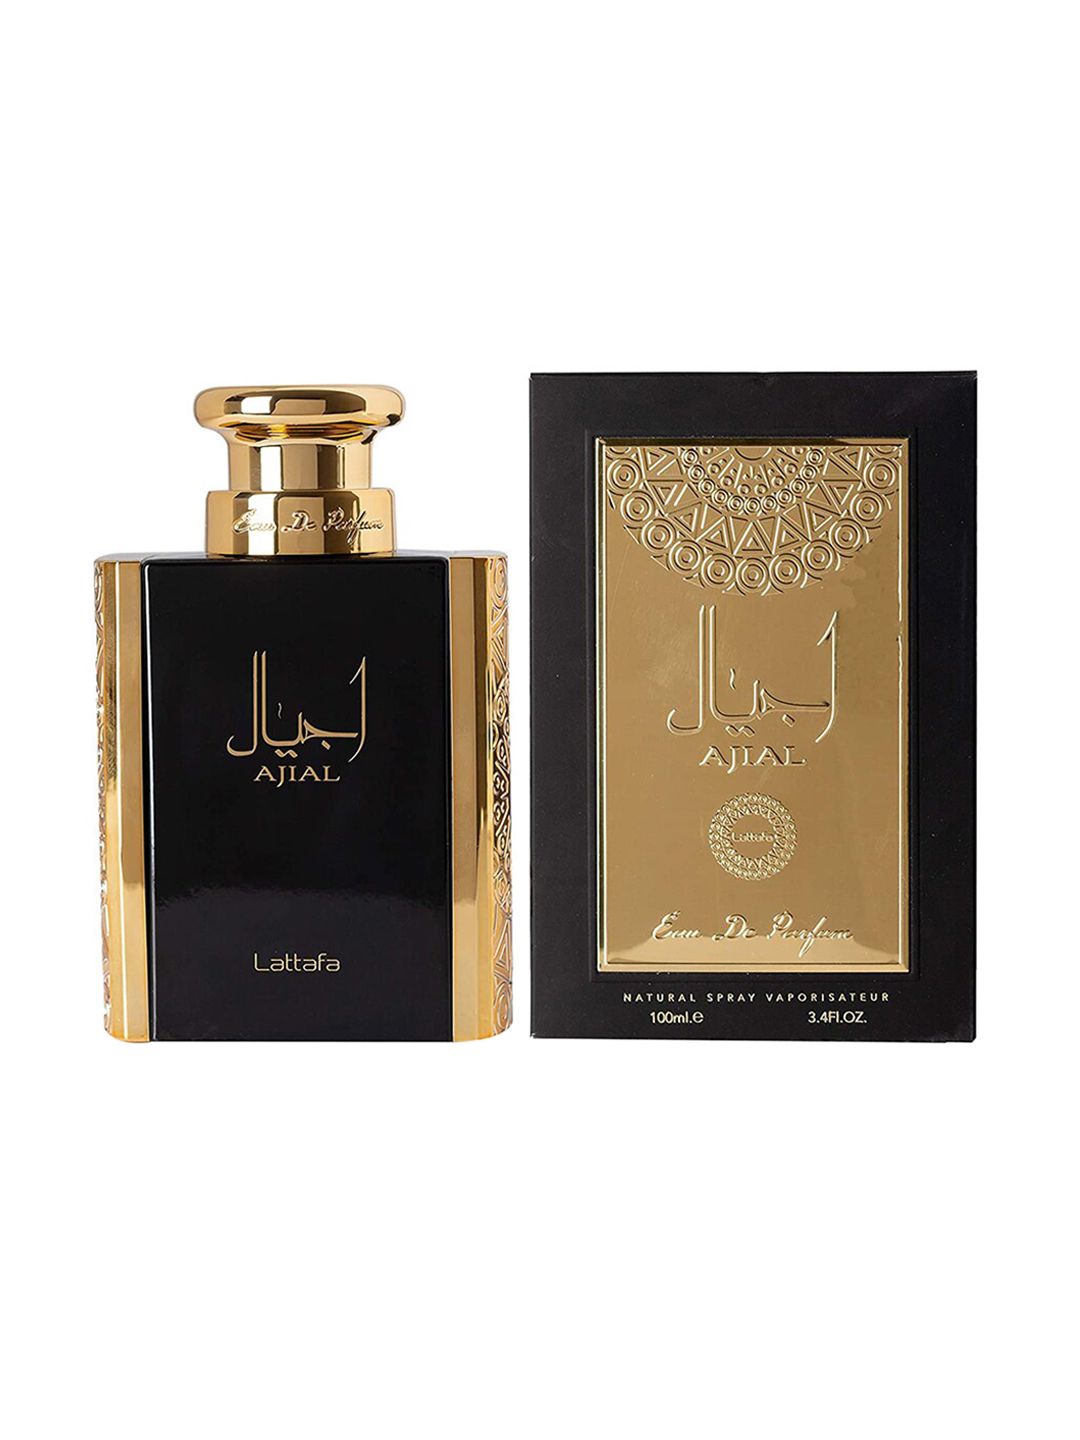 Lattafa Ajial Eau De Parfum 100ml Price in India